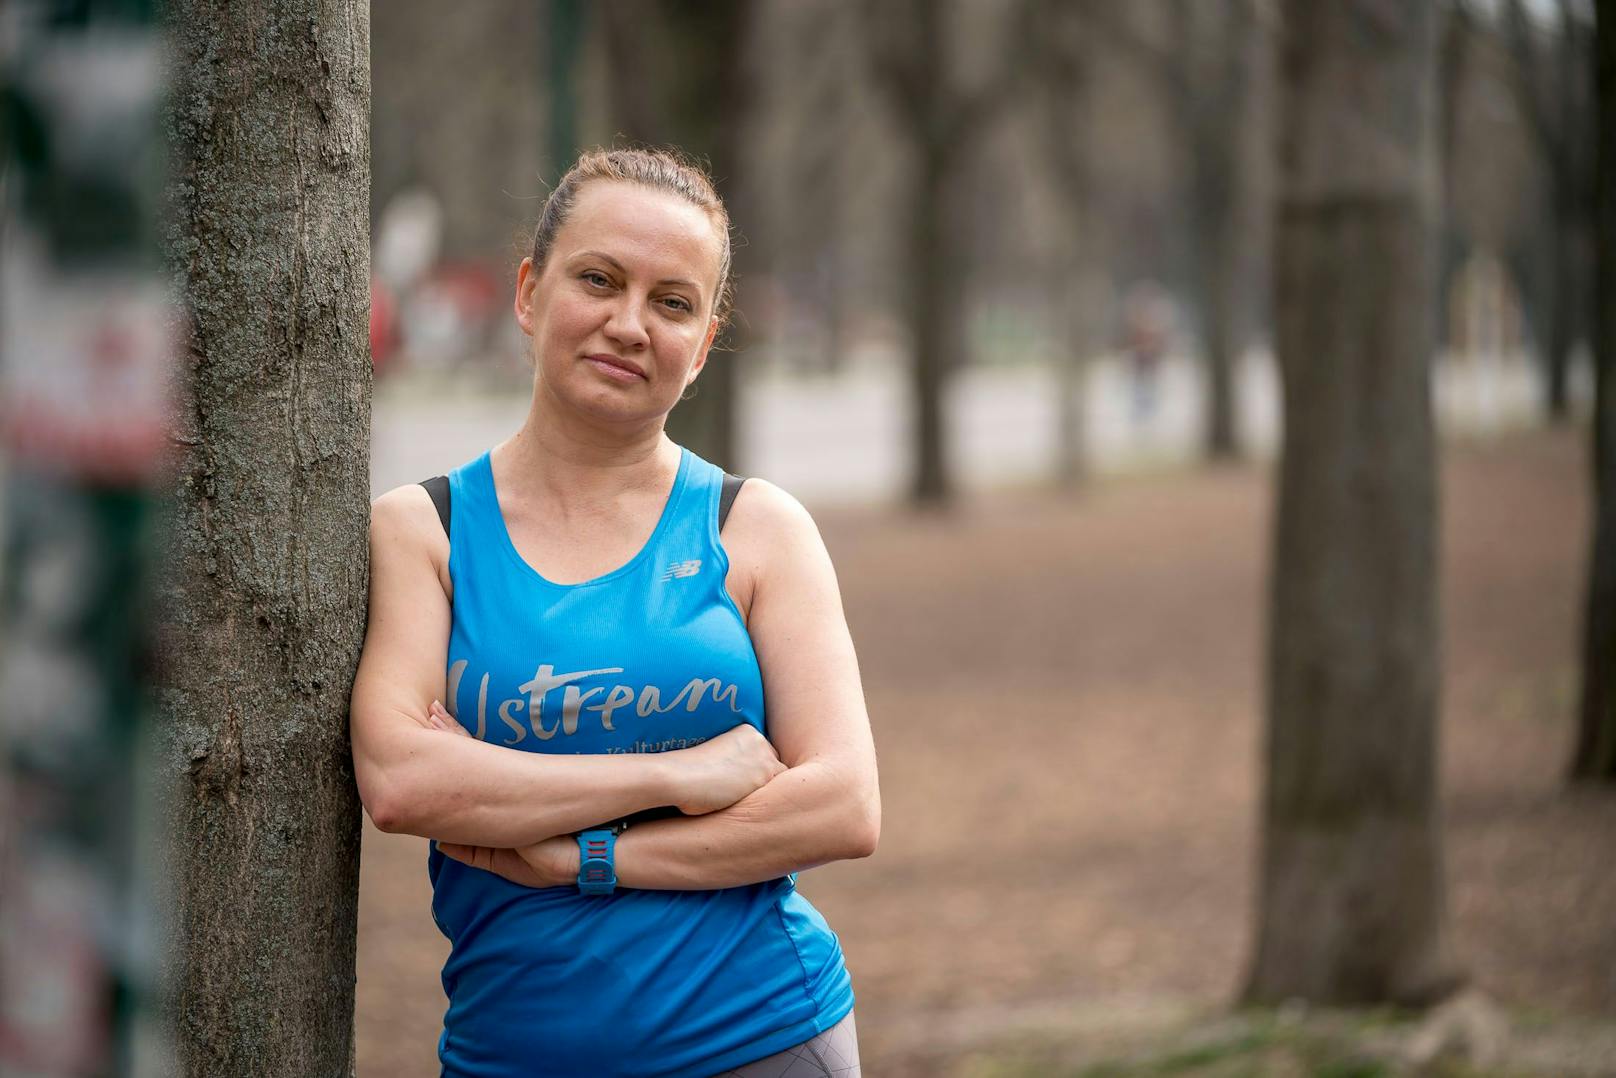 Die Ukrainerin Oleksandra Saienko will beim Vienna City Marathon ein Zeichen setzen